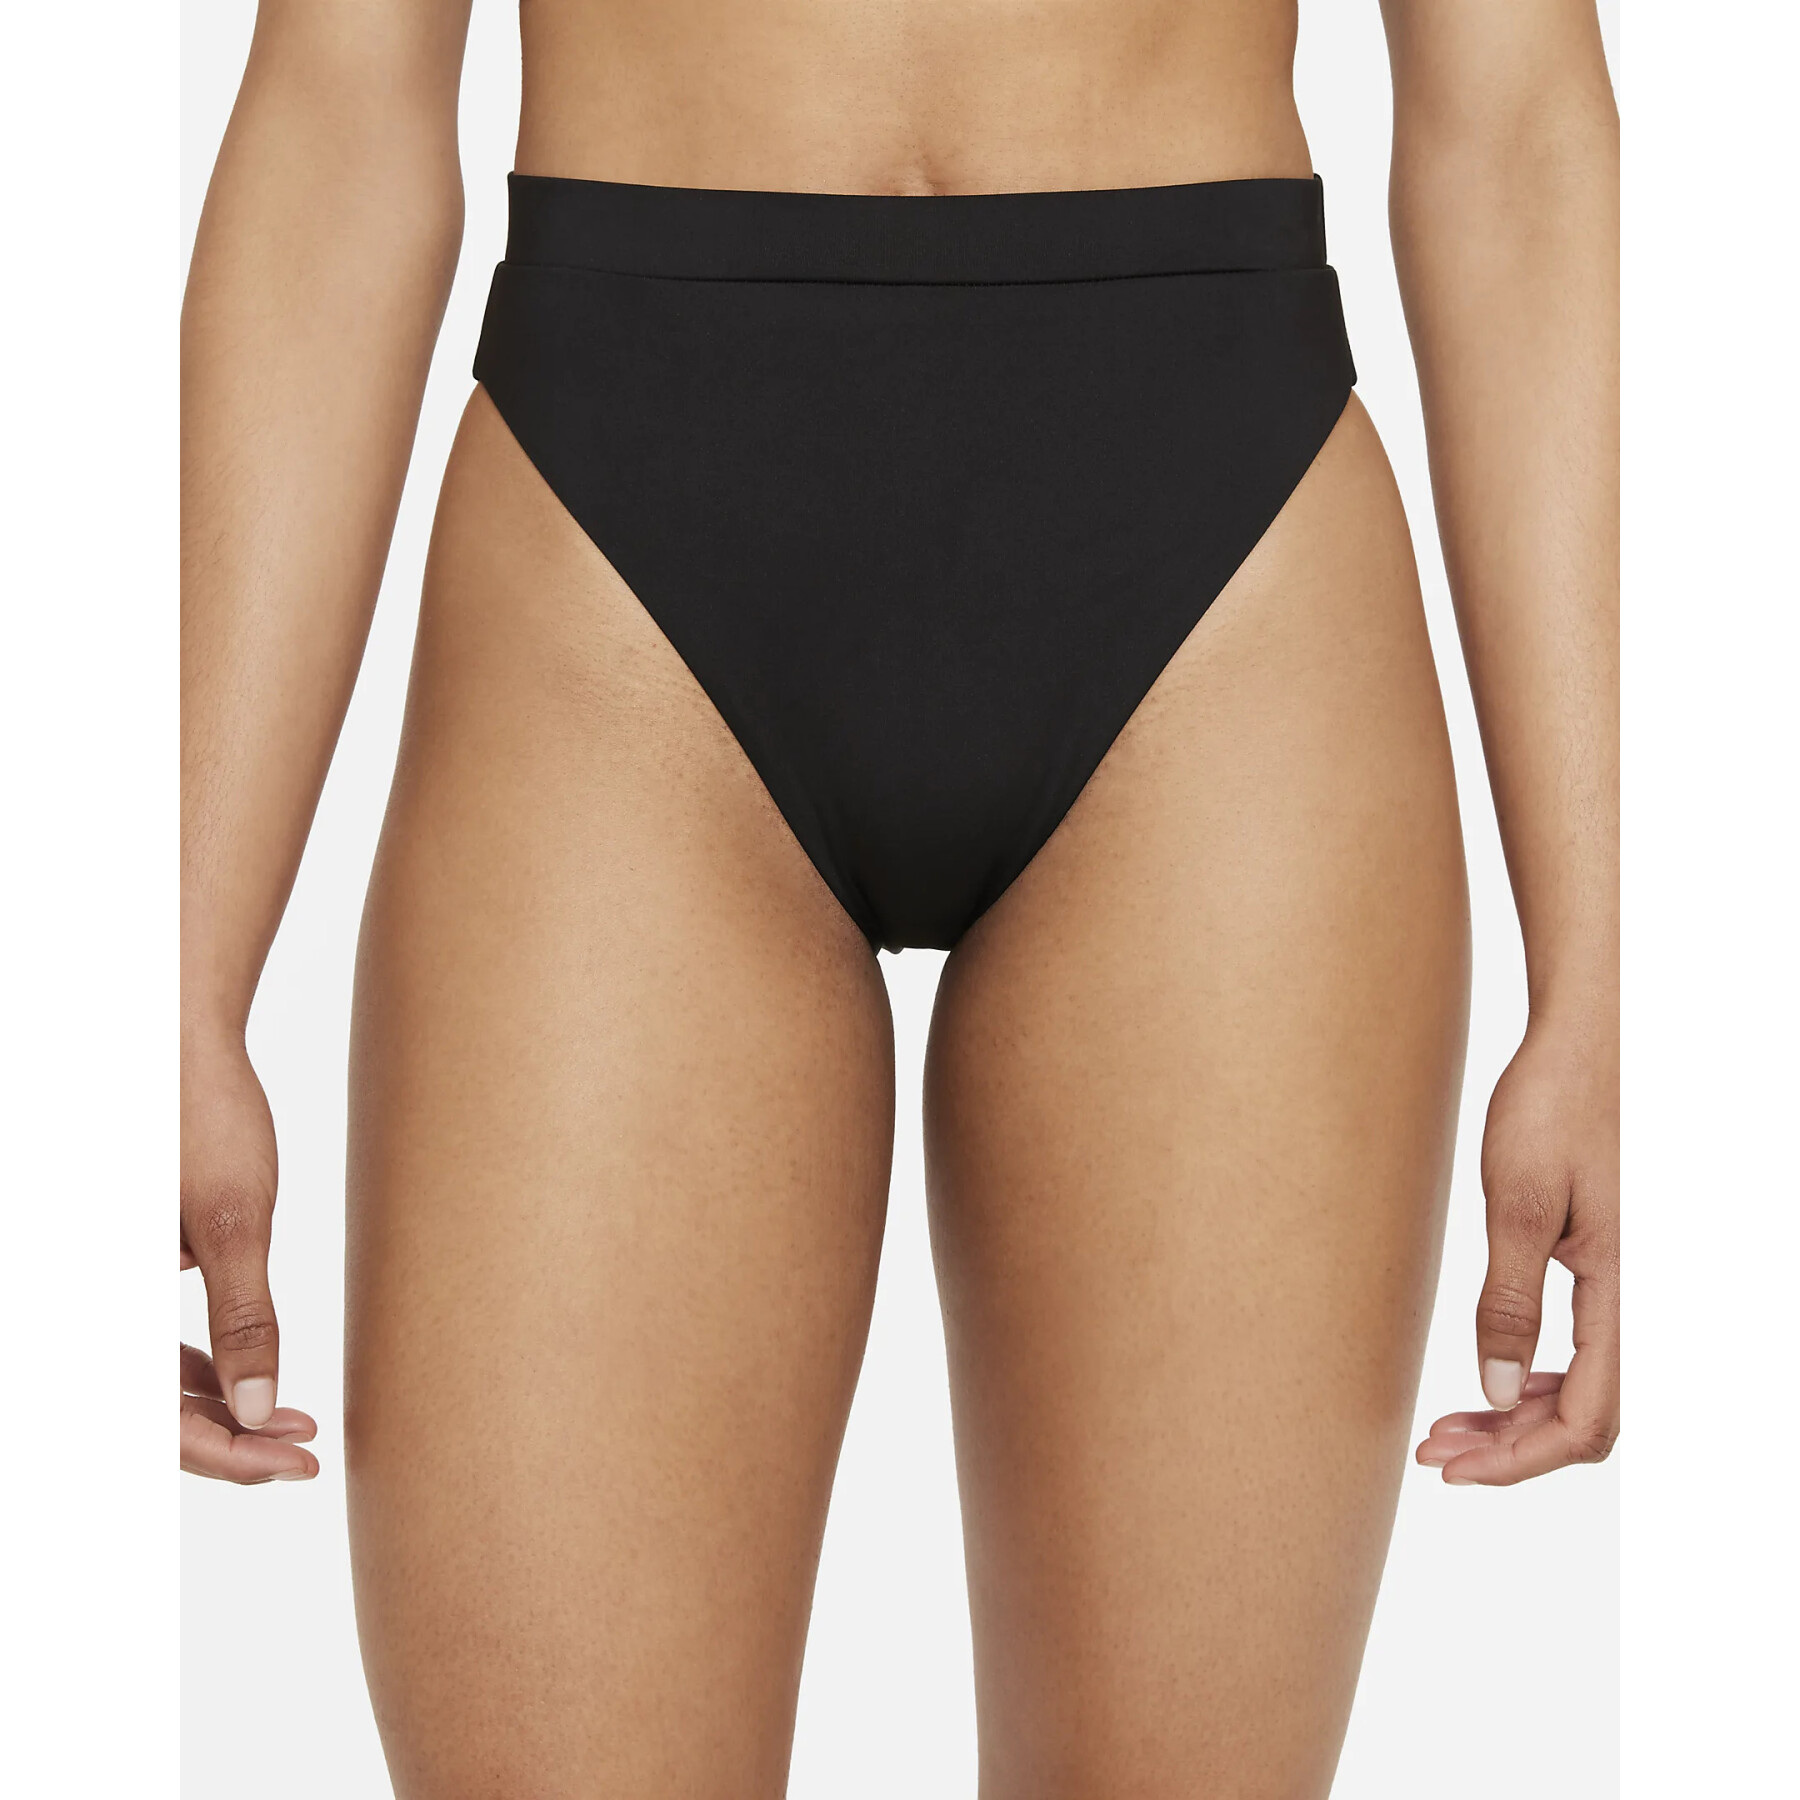 Girl's swimsuit bottom Nike Essential